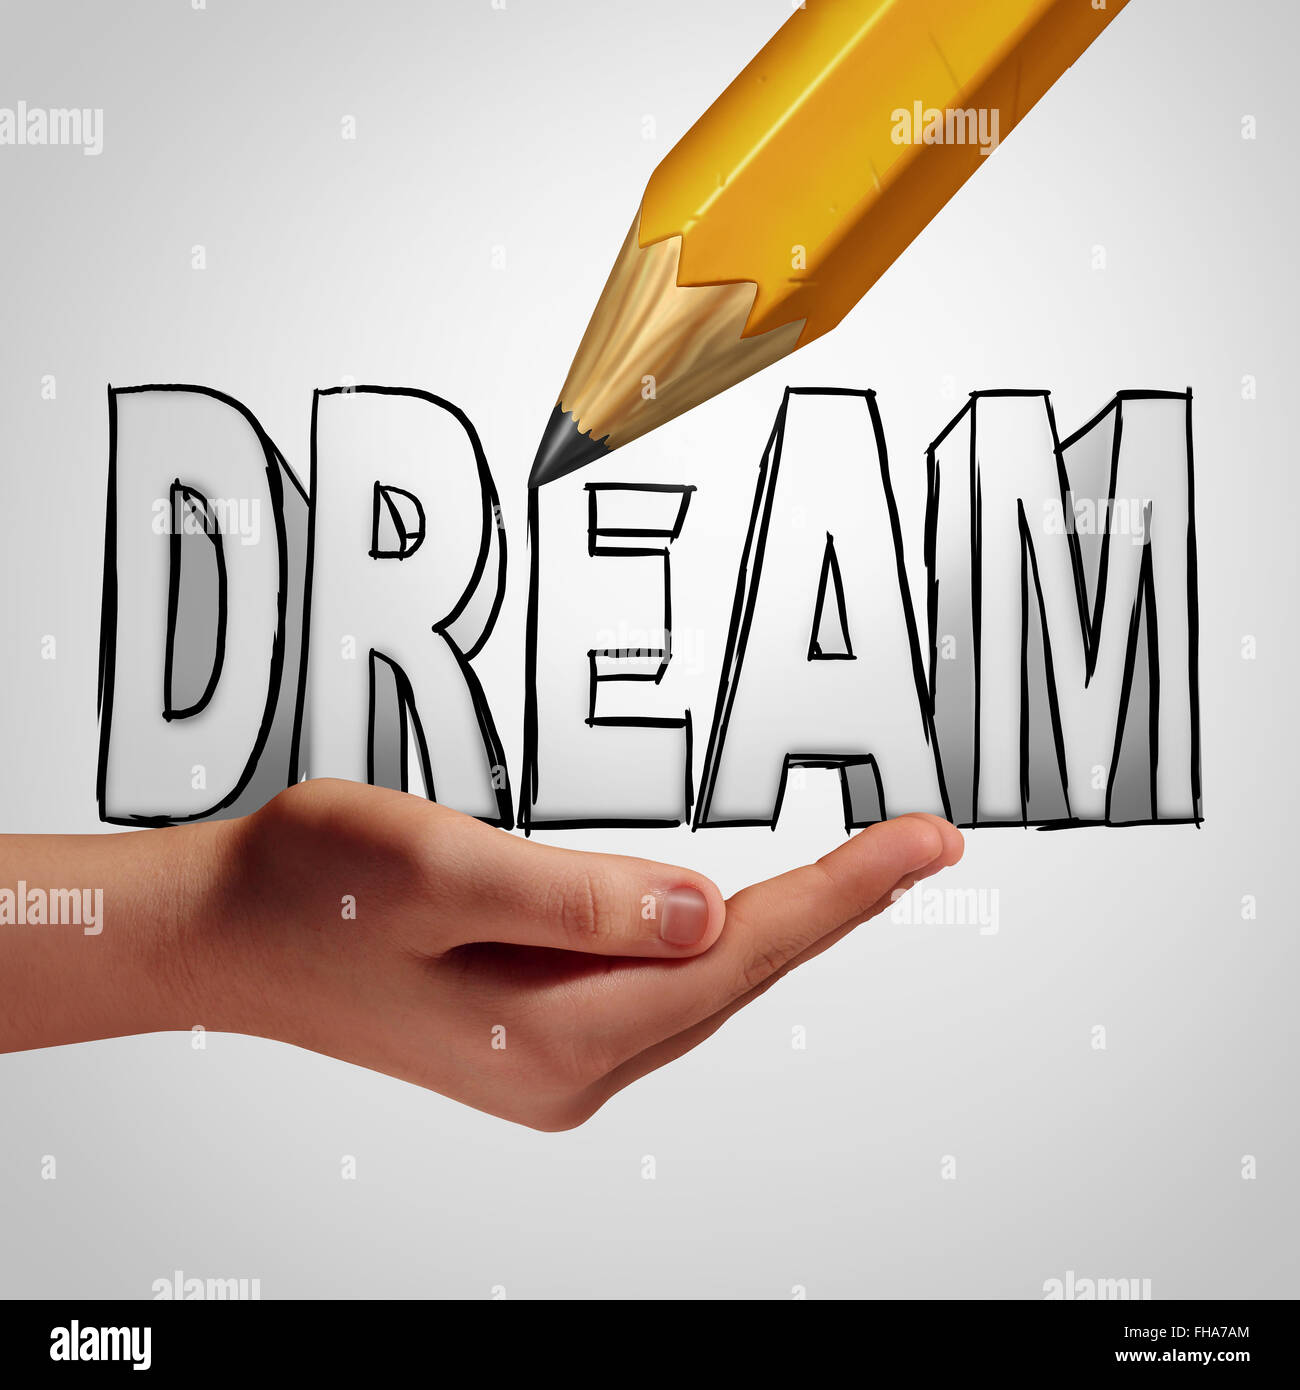 Pianificazione di sogno idea concetto per realizzarlo prendendo il controllo e creare il tuo destino concentrandosi su una strategia positiva per il successo futuro. Foto Stock